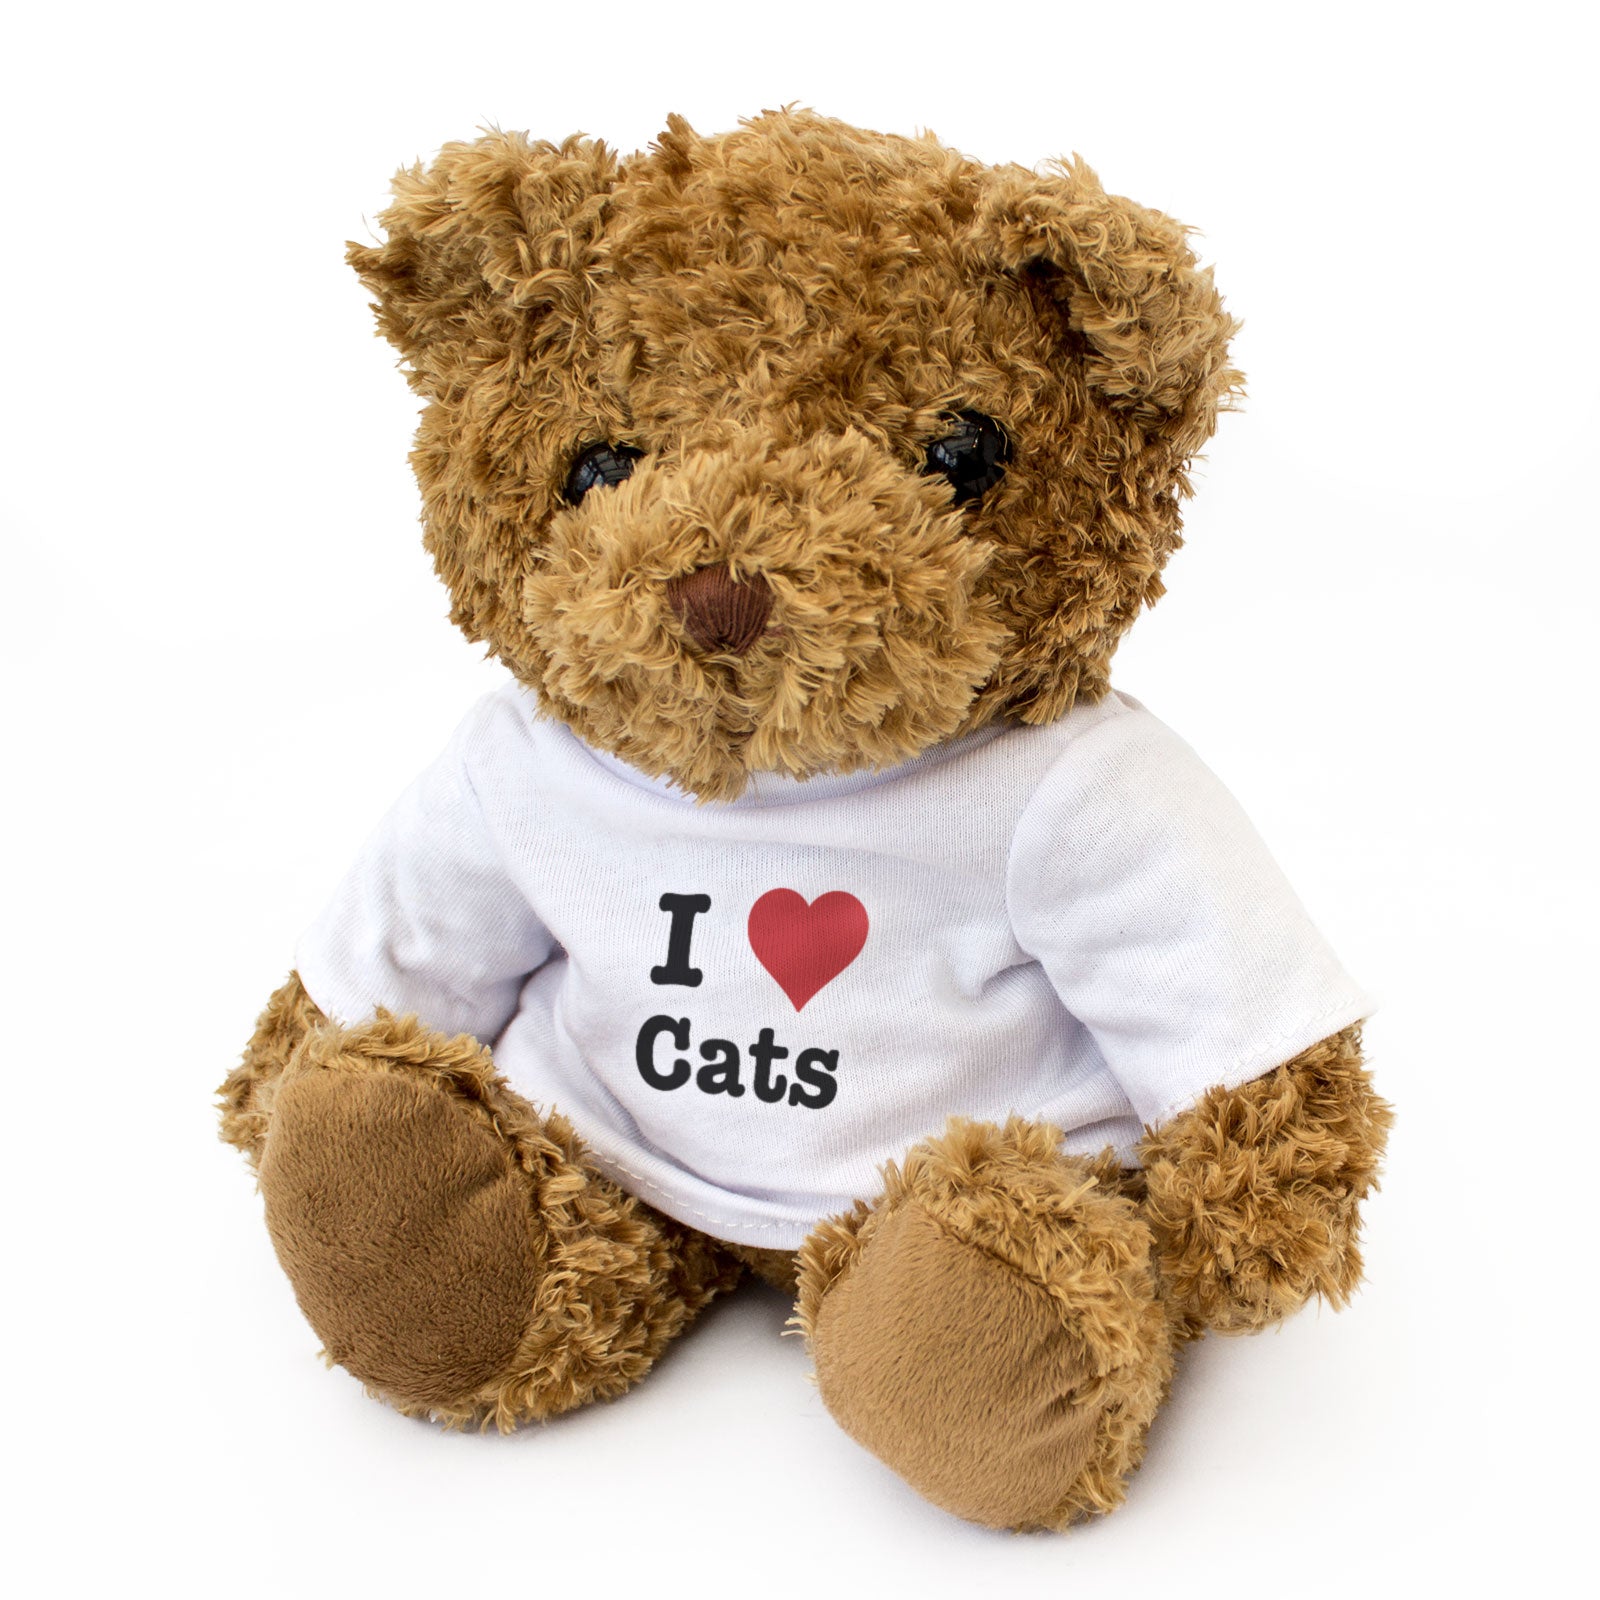 I Heart Cats Teddy Bear